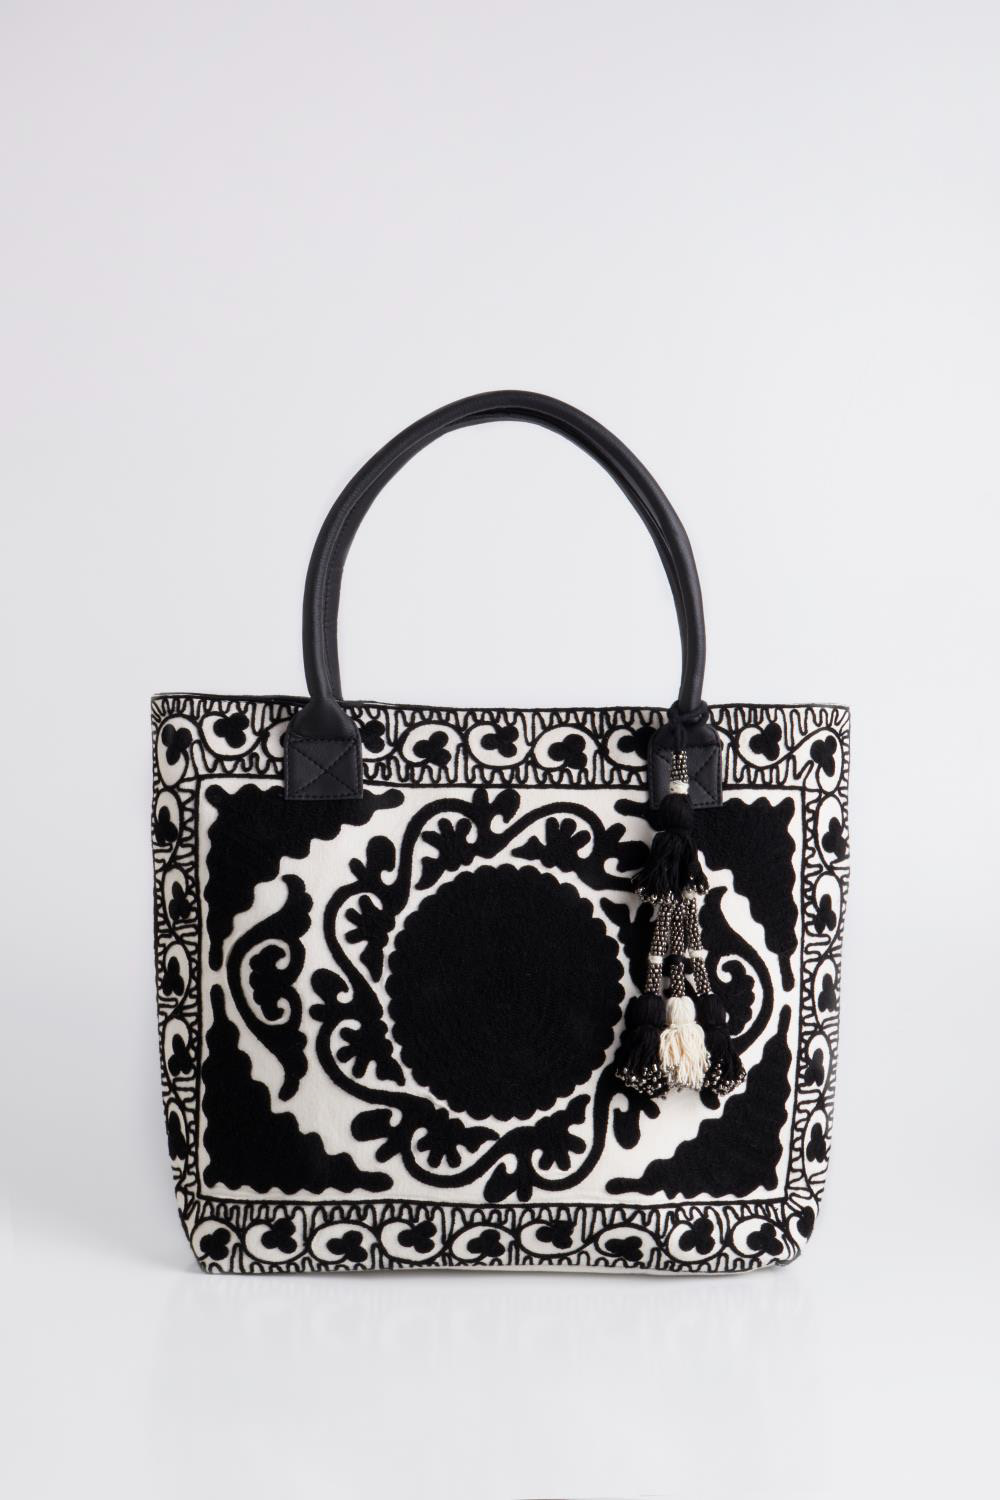 bags design Diseño de accesorios bags Diseño de indumentaria diseño accesories design marroquineria